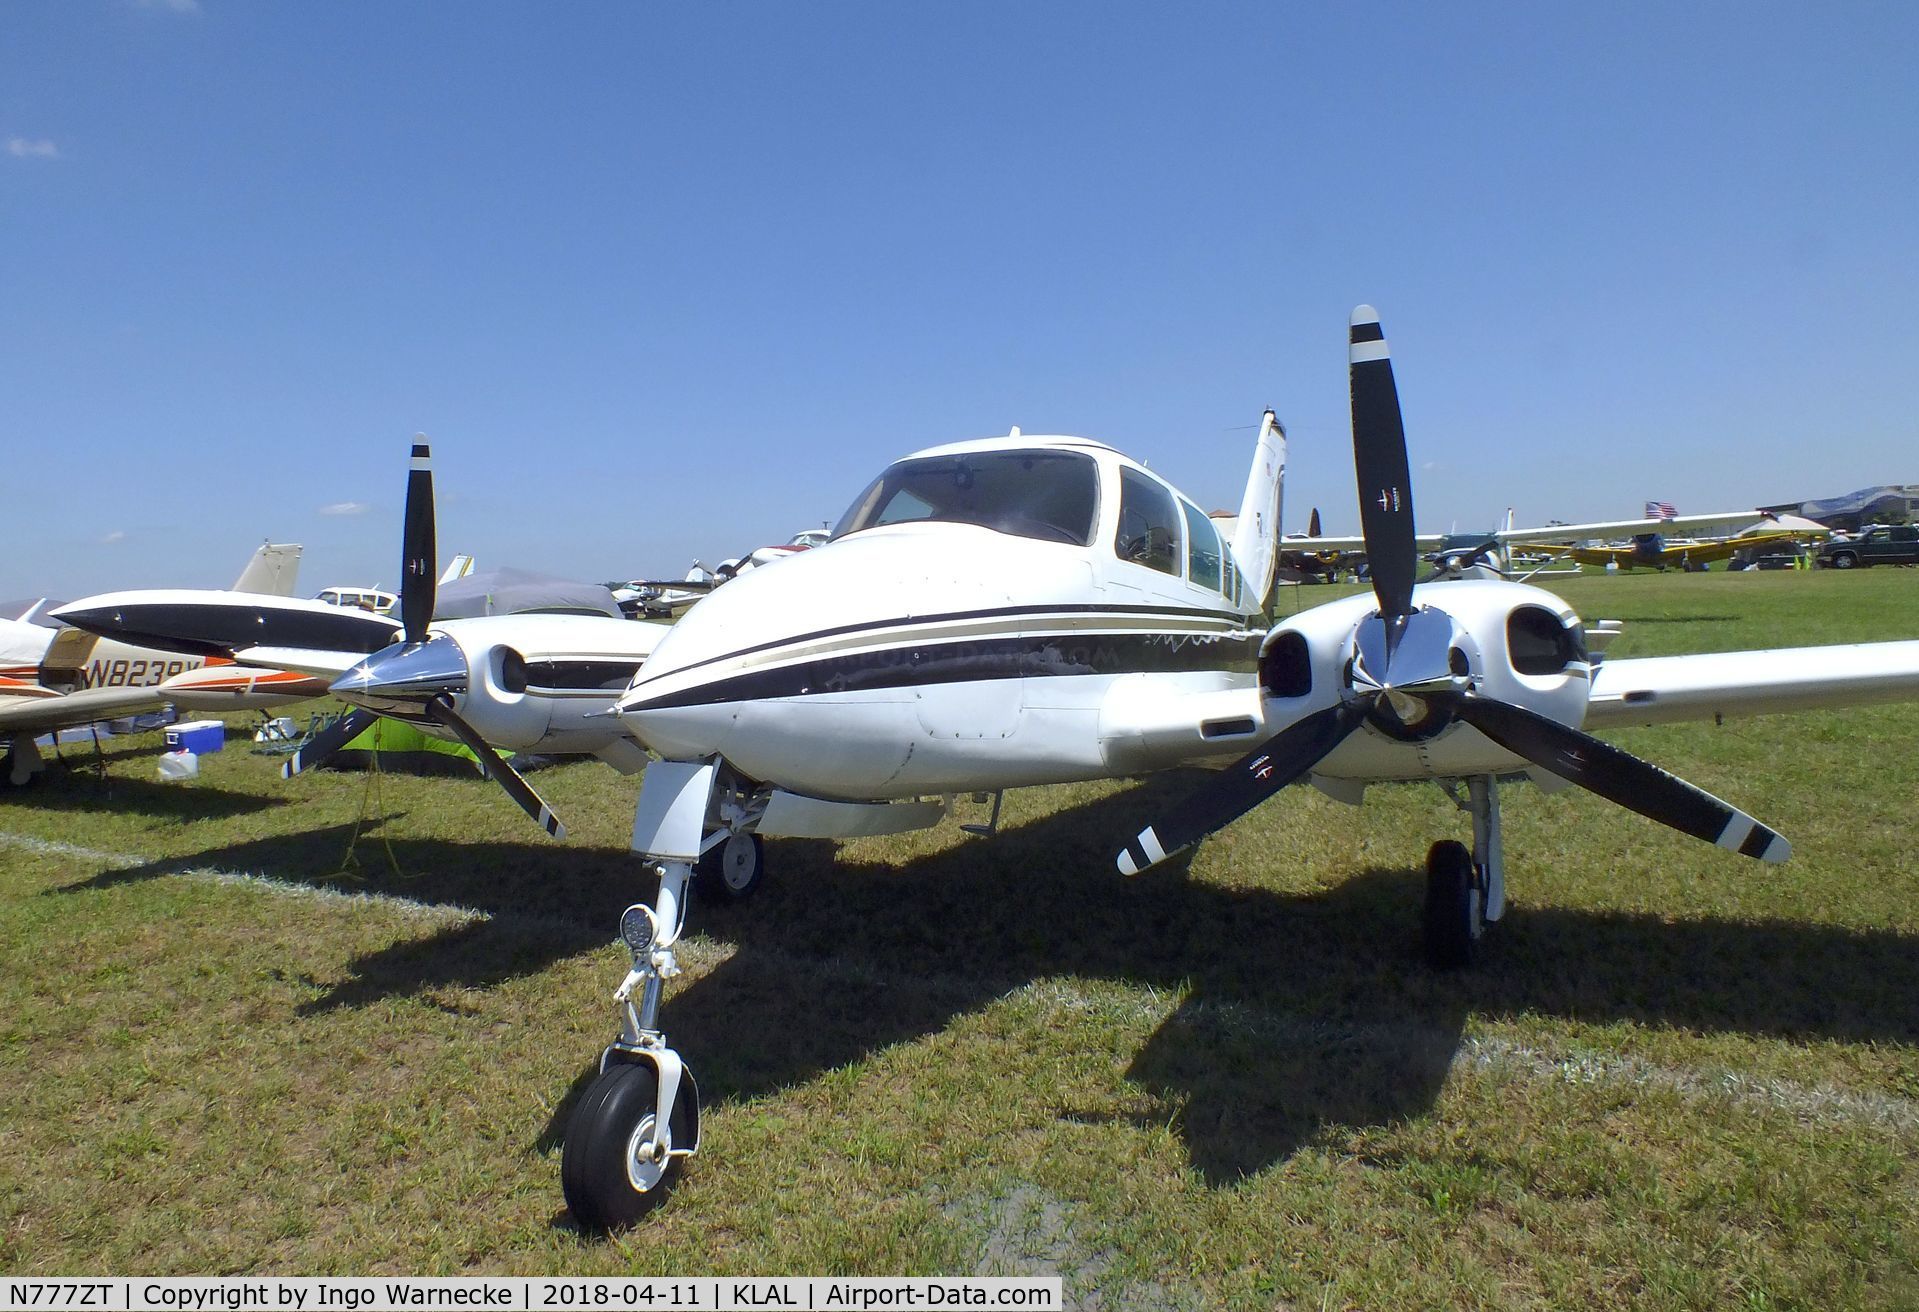 N777ZT, 1966 Cessna 320E Executive Skyknight C/N 320E0033, Cessna 320E Executive Skyknight at 2018 Sun 'n Fun, Lakeland FL